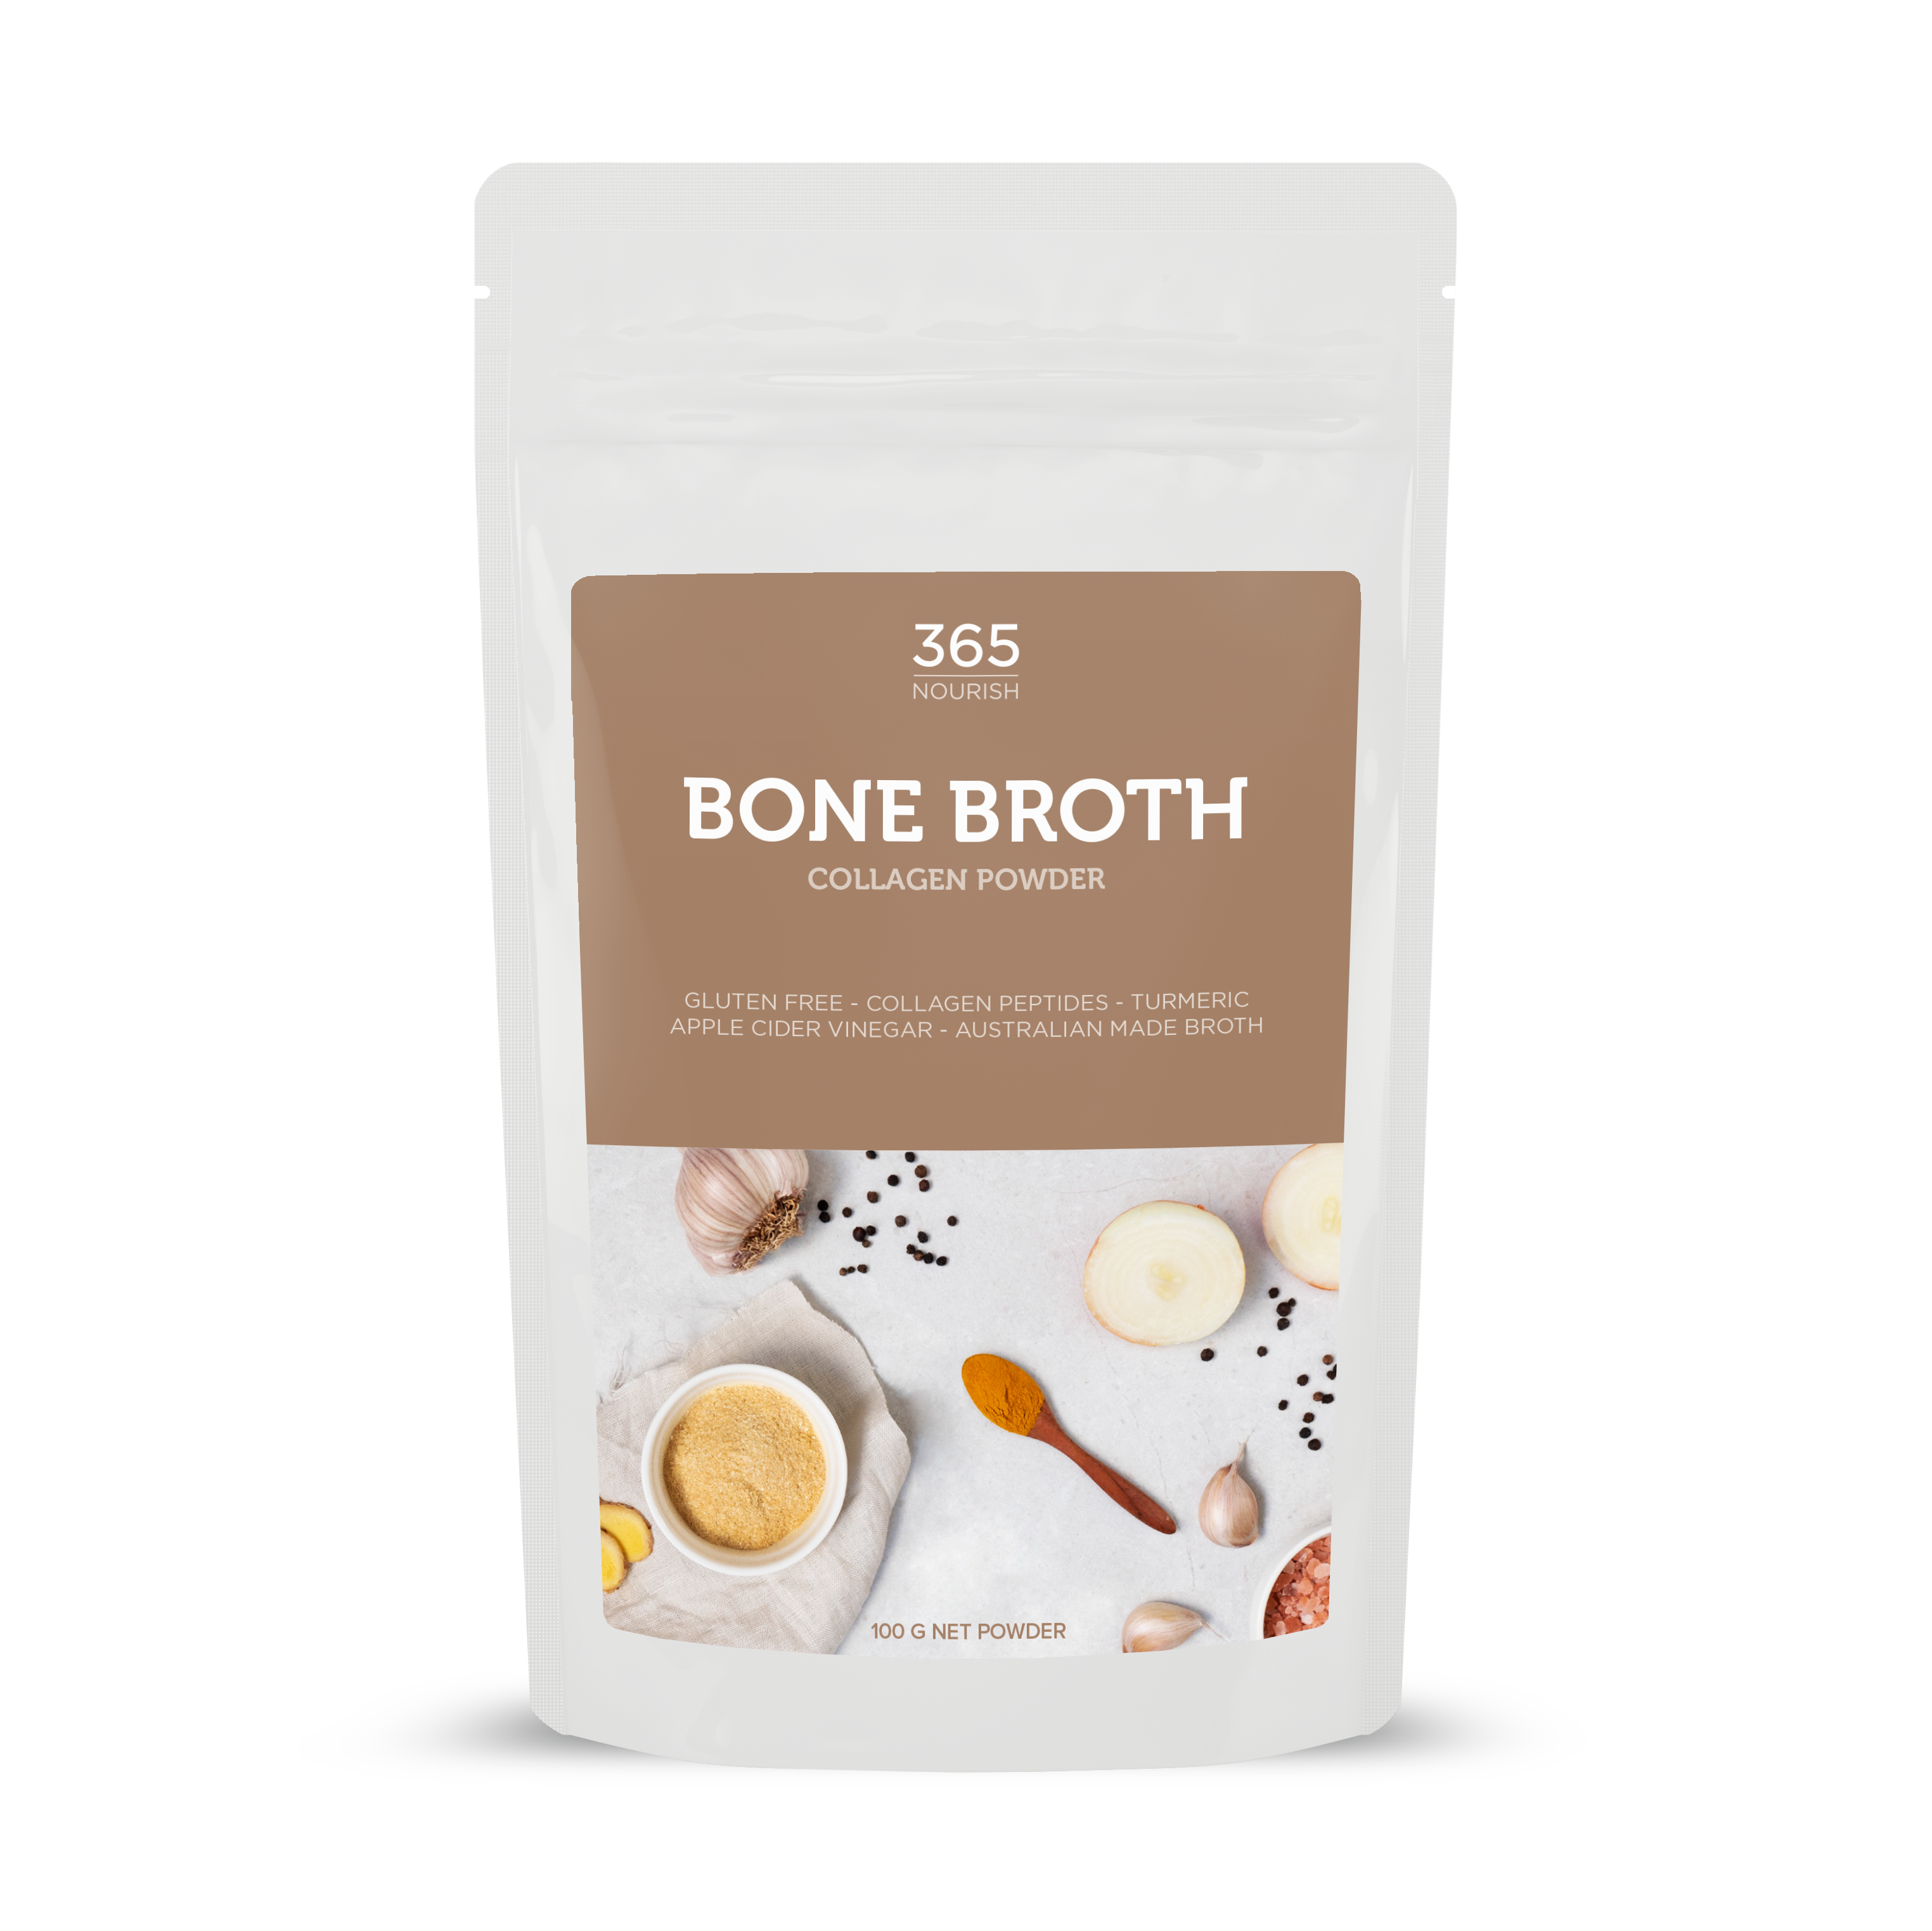 Bone Broth Collagen Powder 100g - 365 Nourish